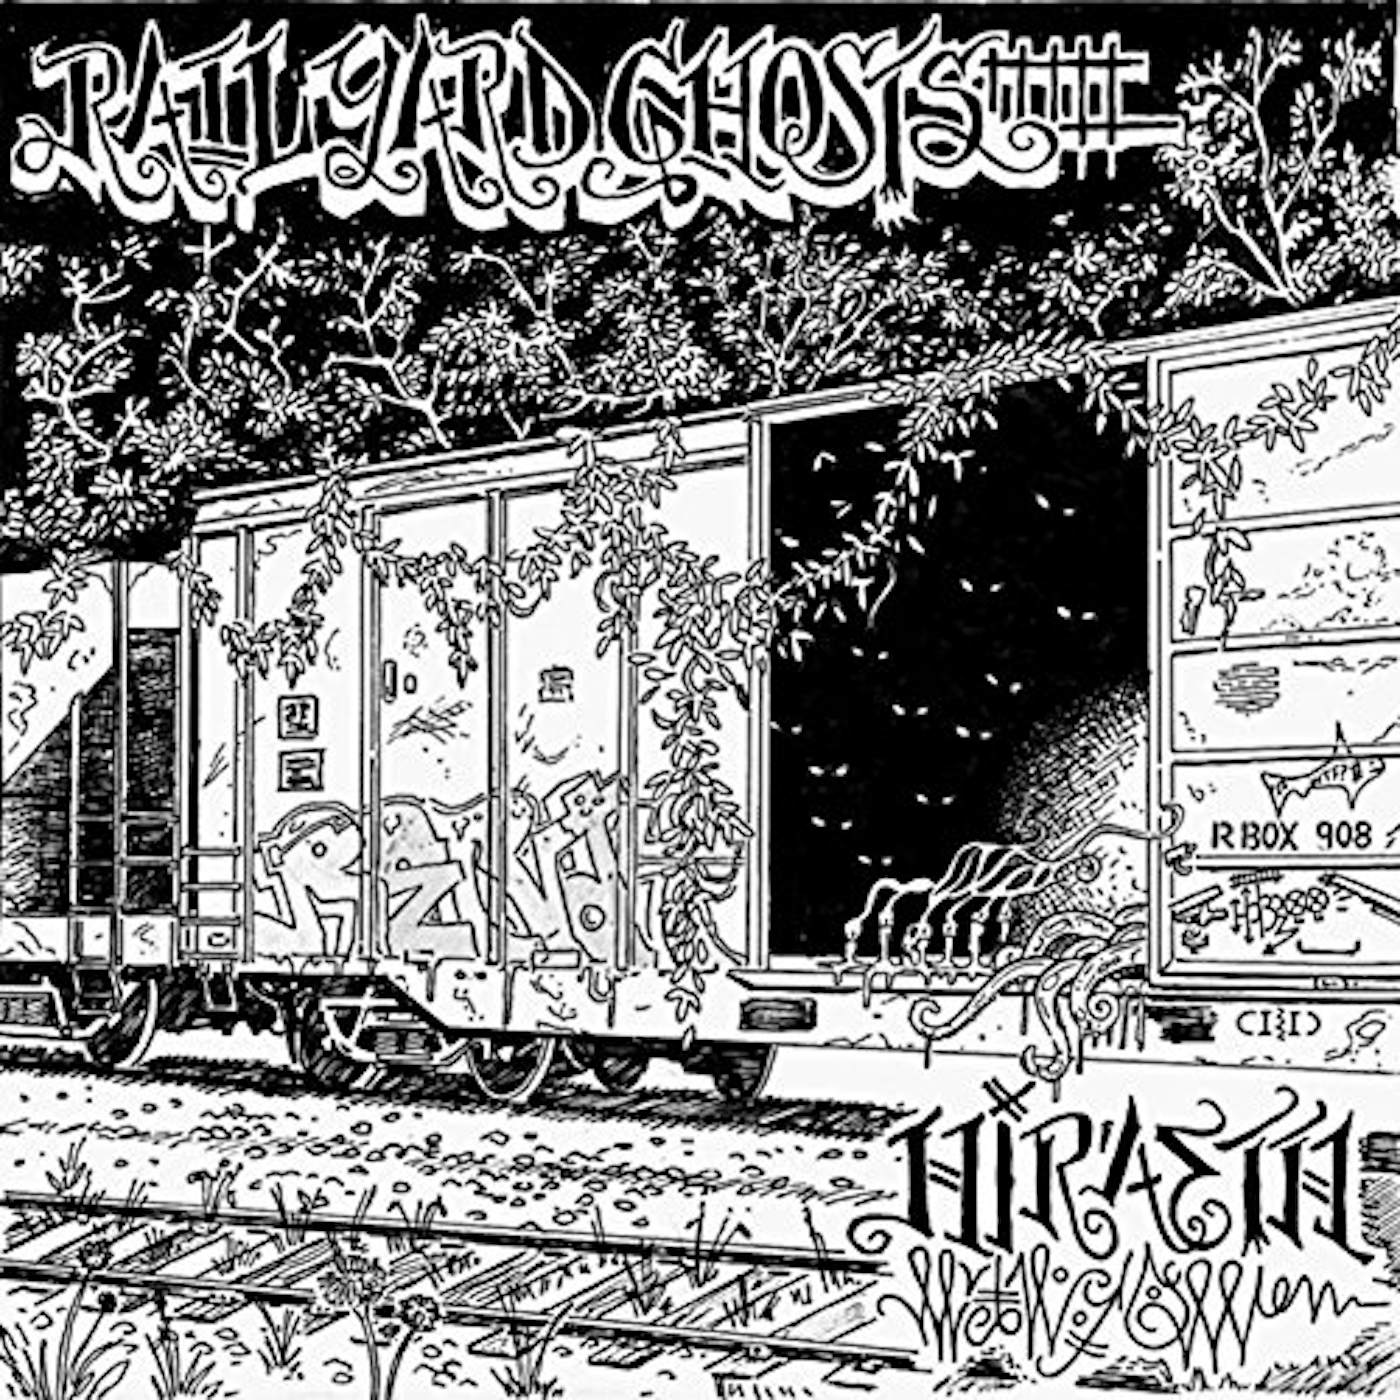 Rail Yard Ghosts HIRAETH CD